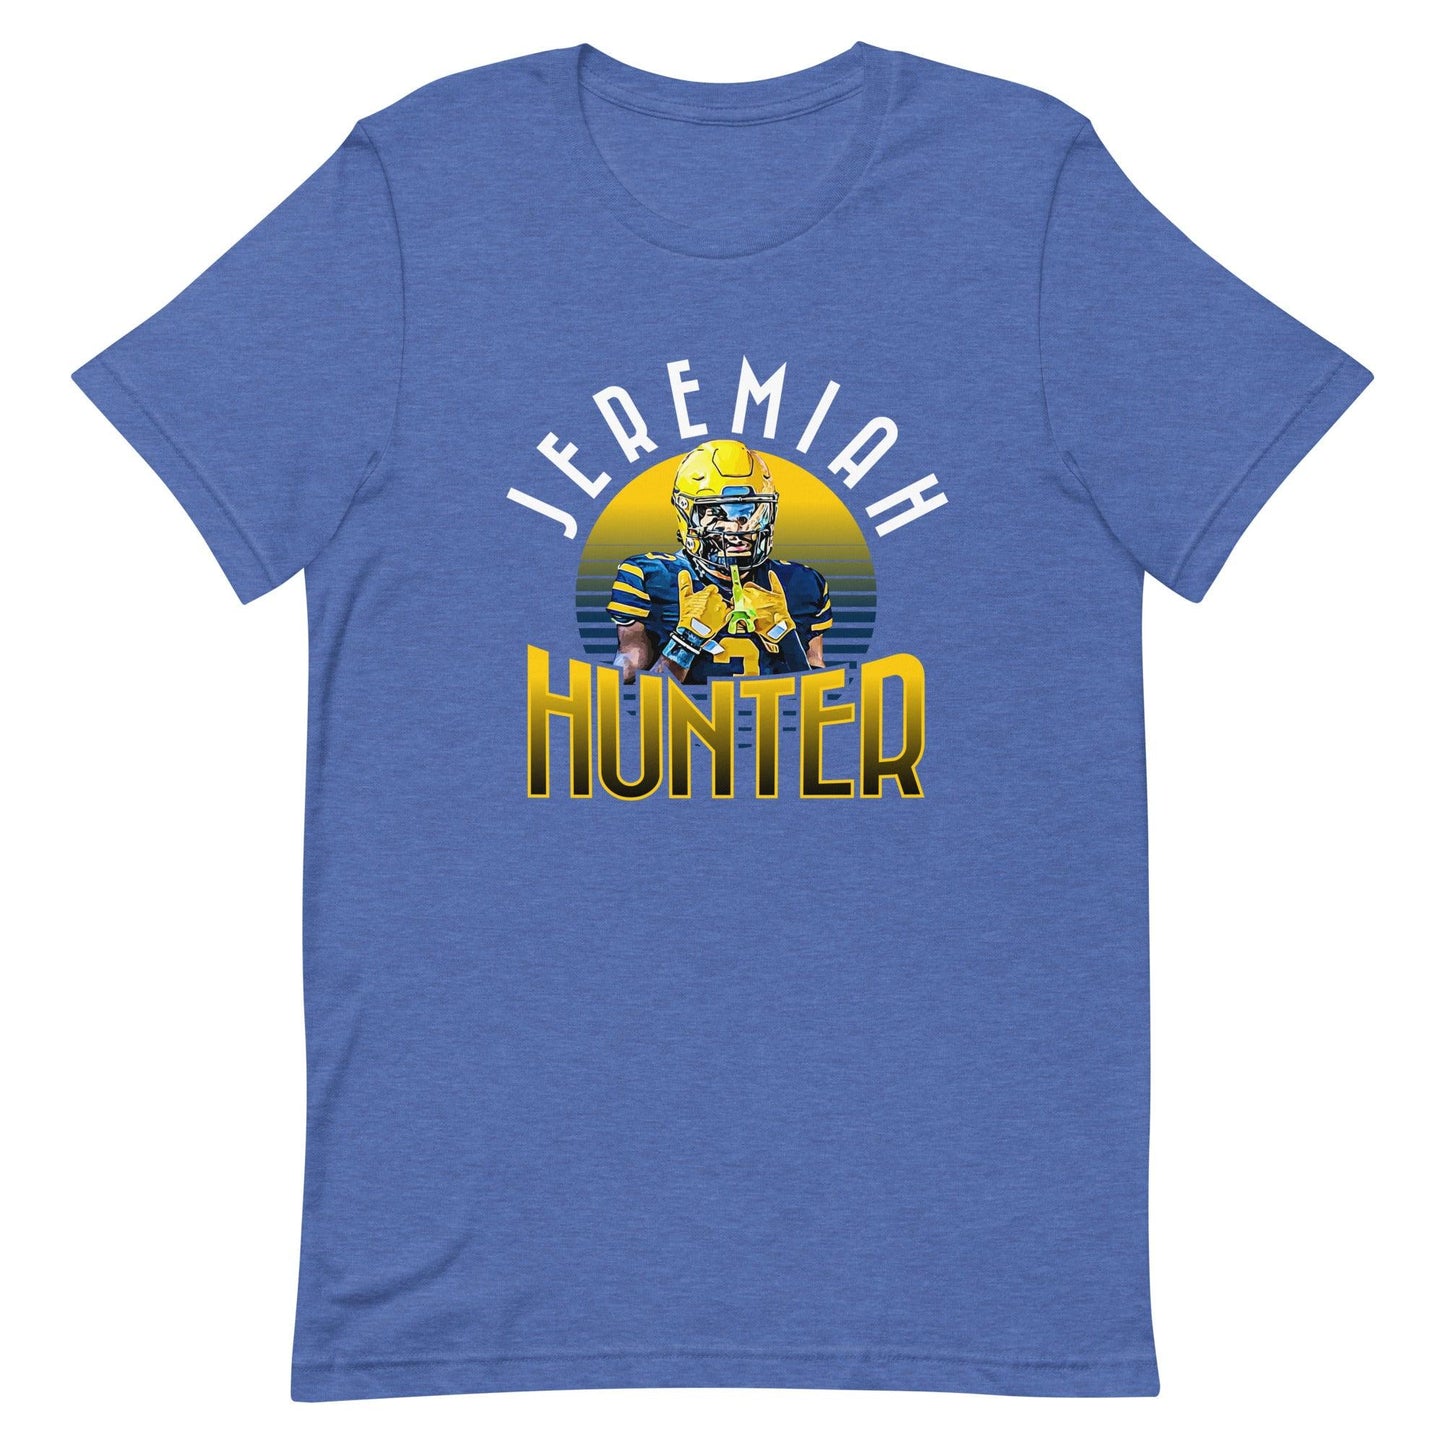 Jeremiah Hunter "Gameday" t-shirt - Fan Arch